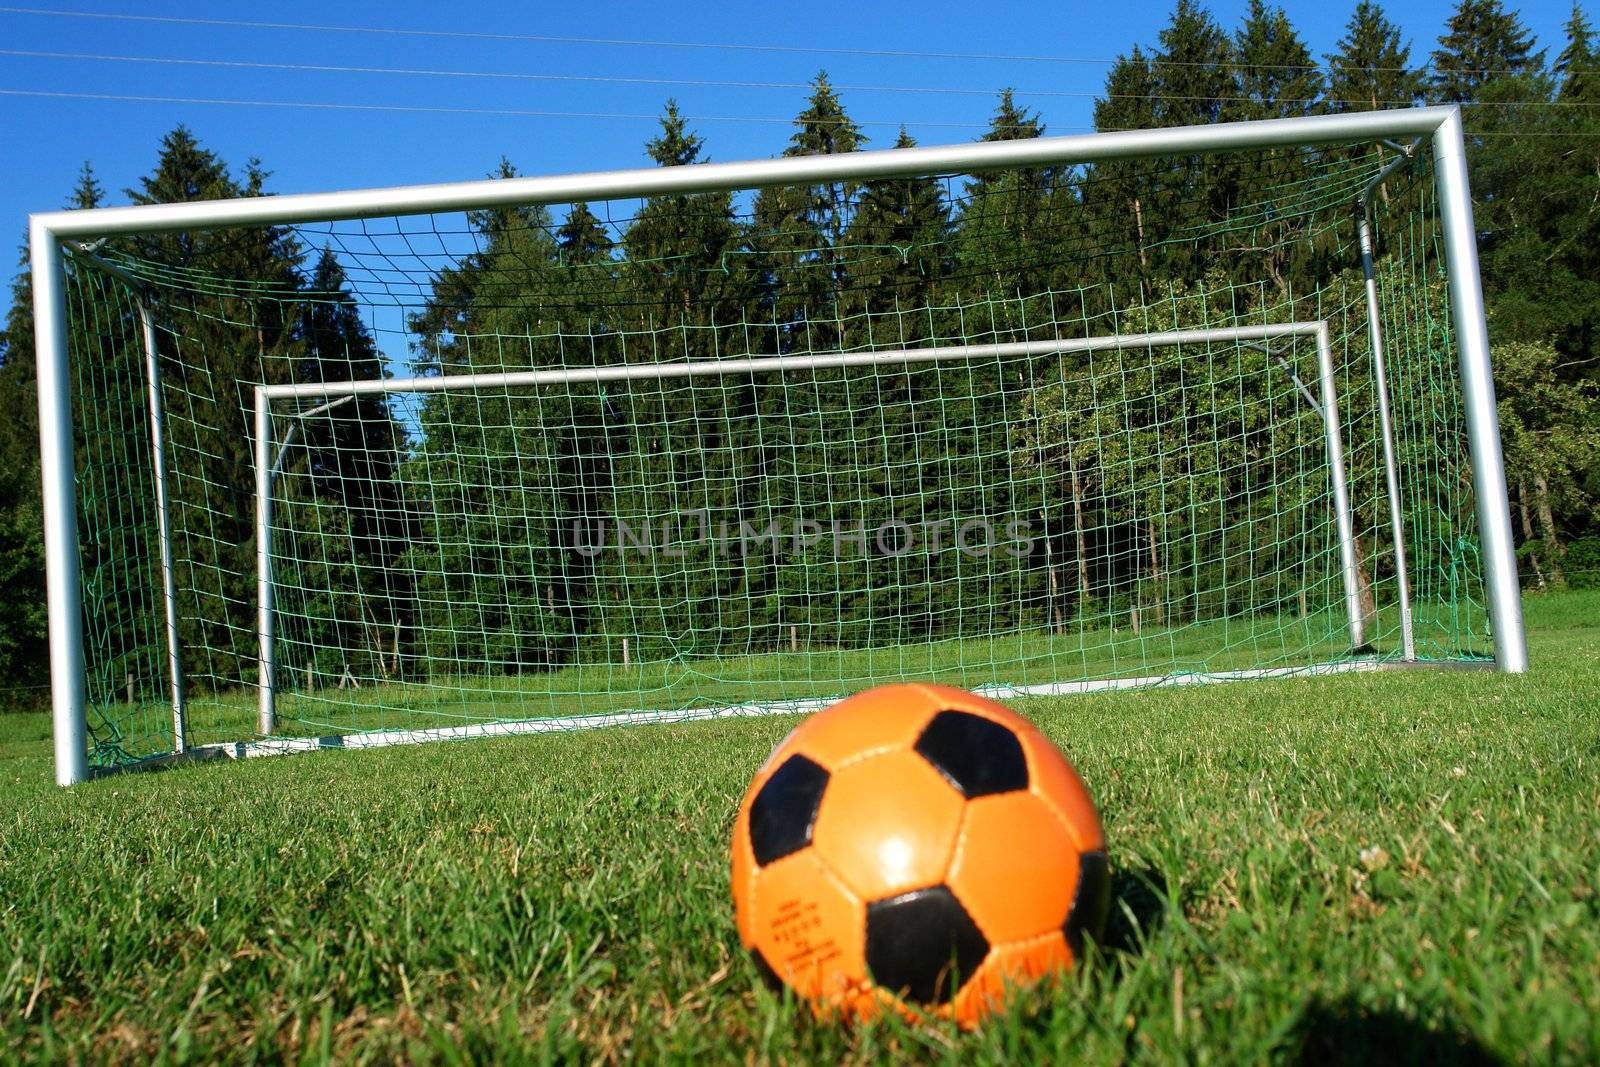 Goal. a soccer ball in a net. outdoors